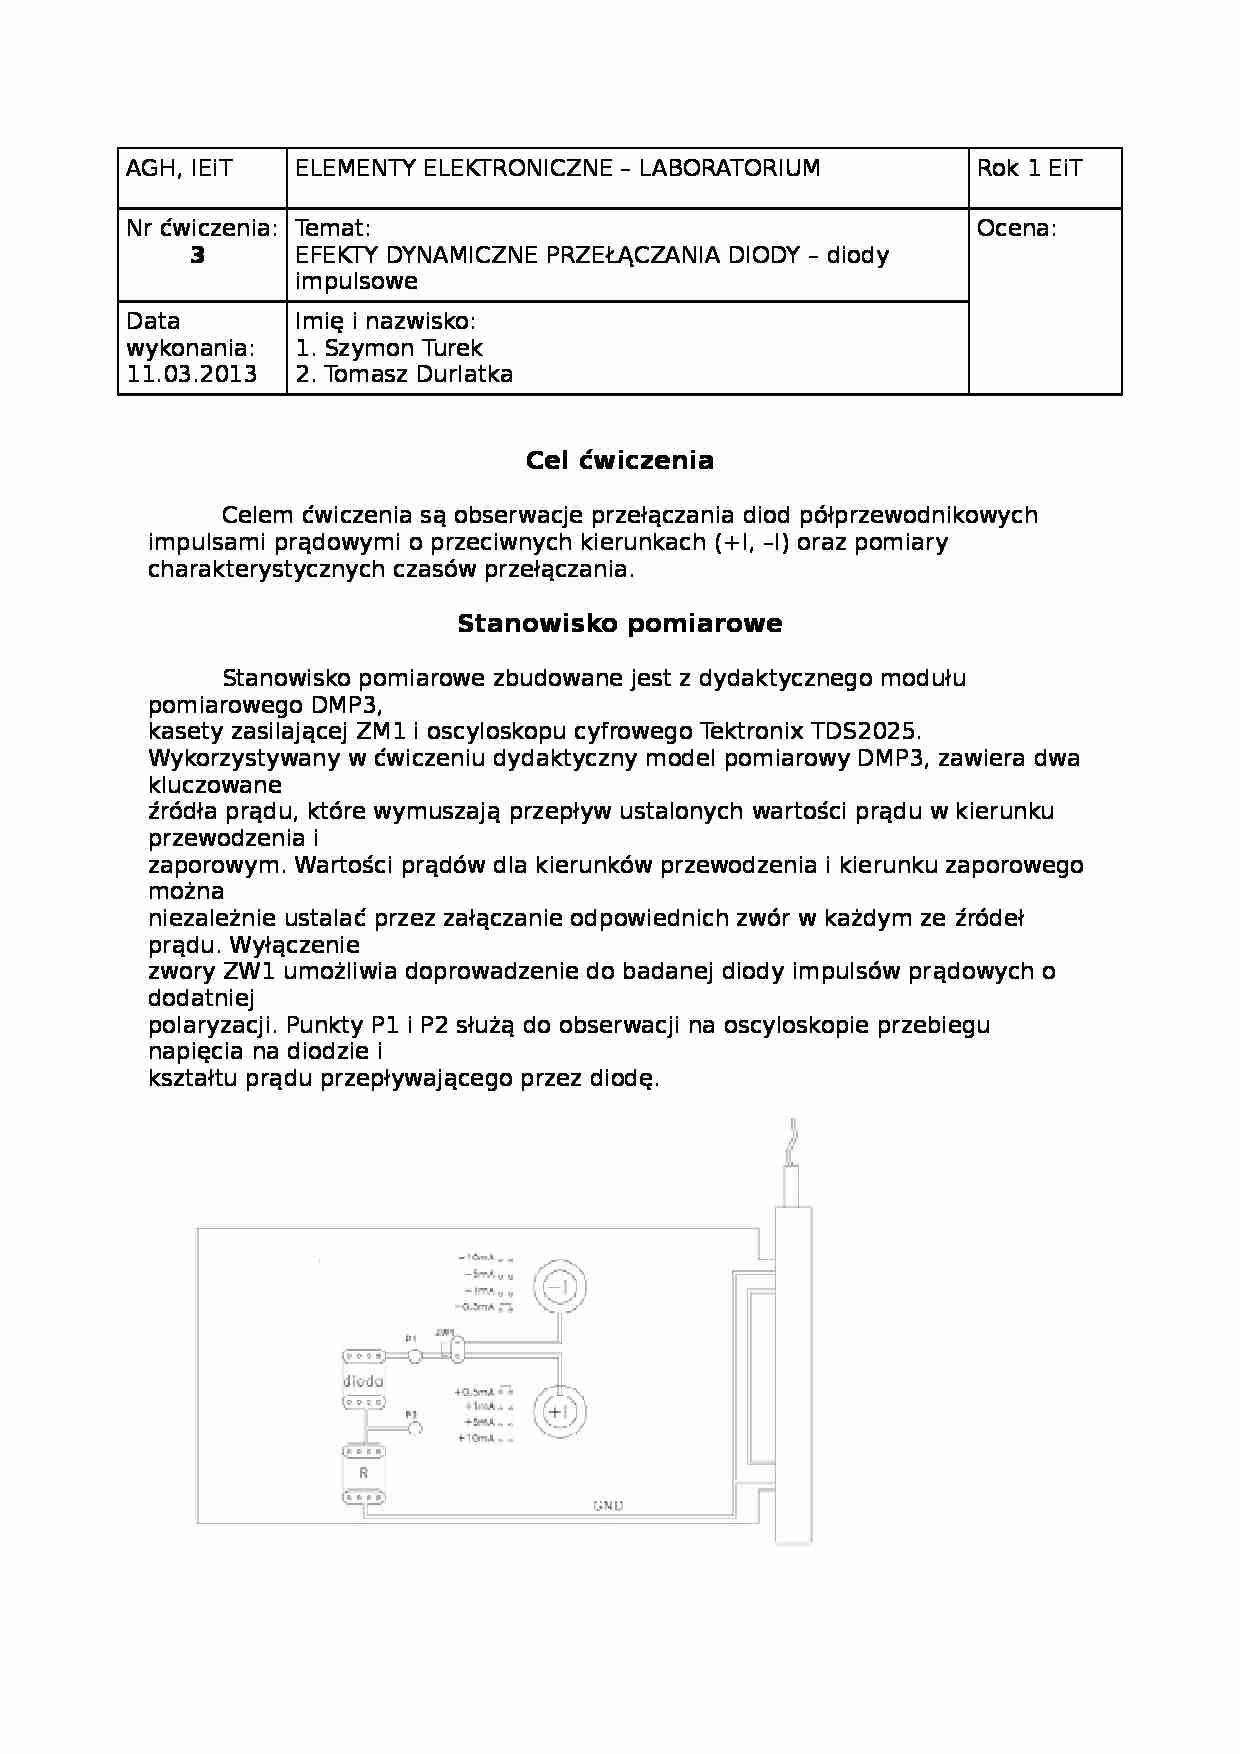 Efekty dynamiczne przełączania diody (konspekt) - strona 1